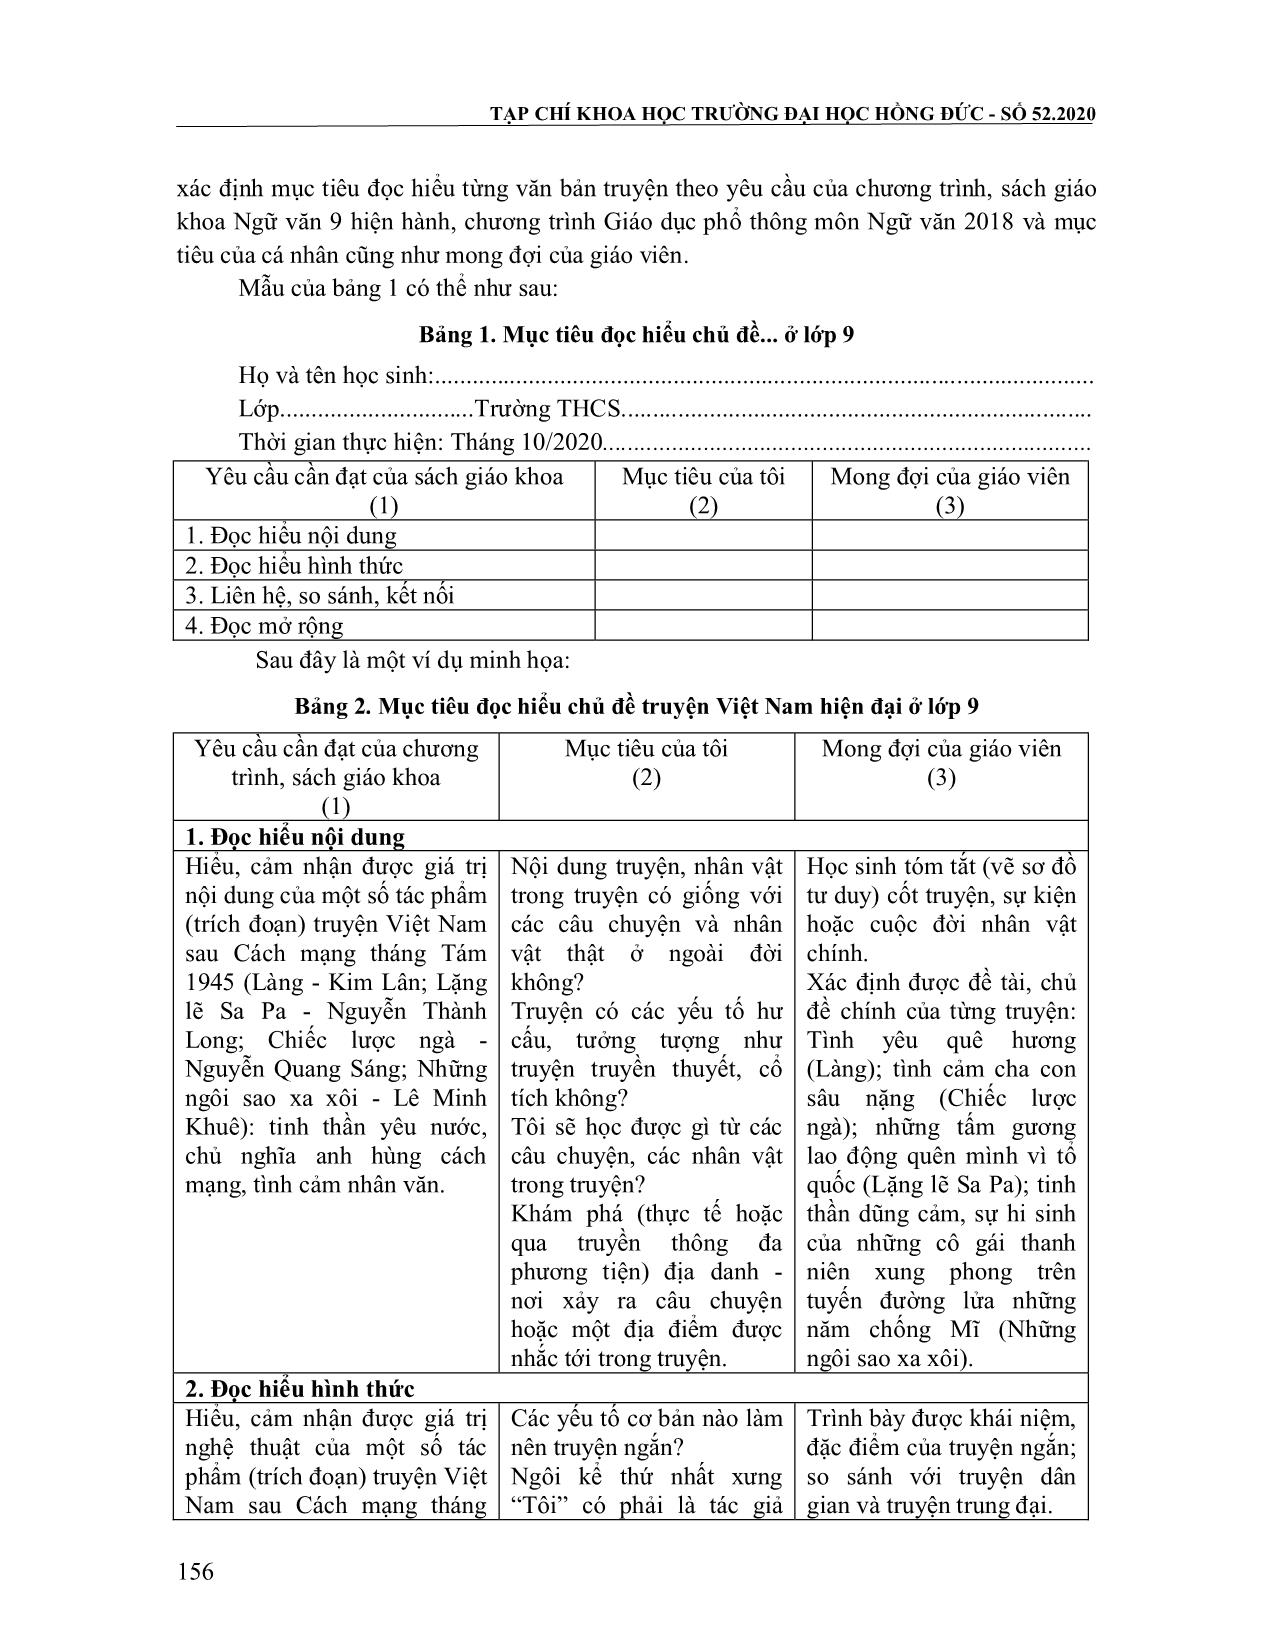 Hướng dẫn học sinh xây dựng và sử dụng hồ sơ mục tiêu trong dạy học đọc hiểu văn bản truyện Việt Nam hiện đại ở lớp 9 trang 5